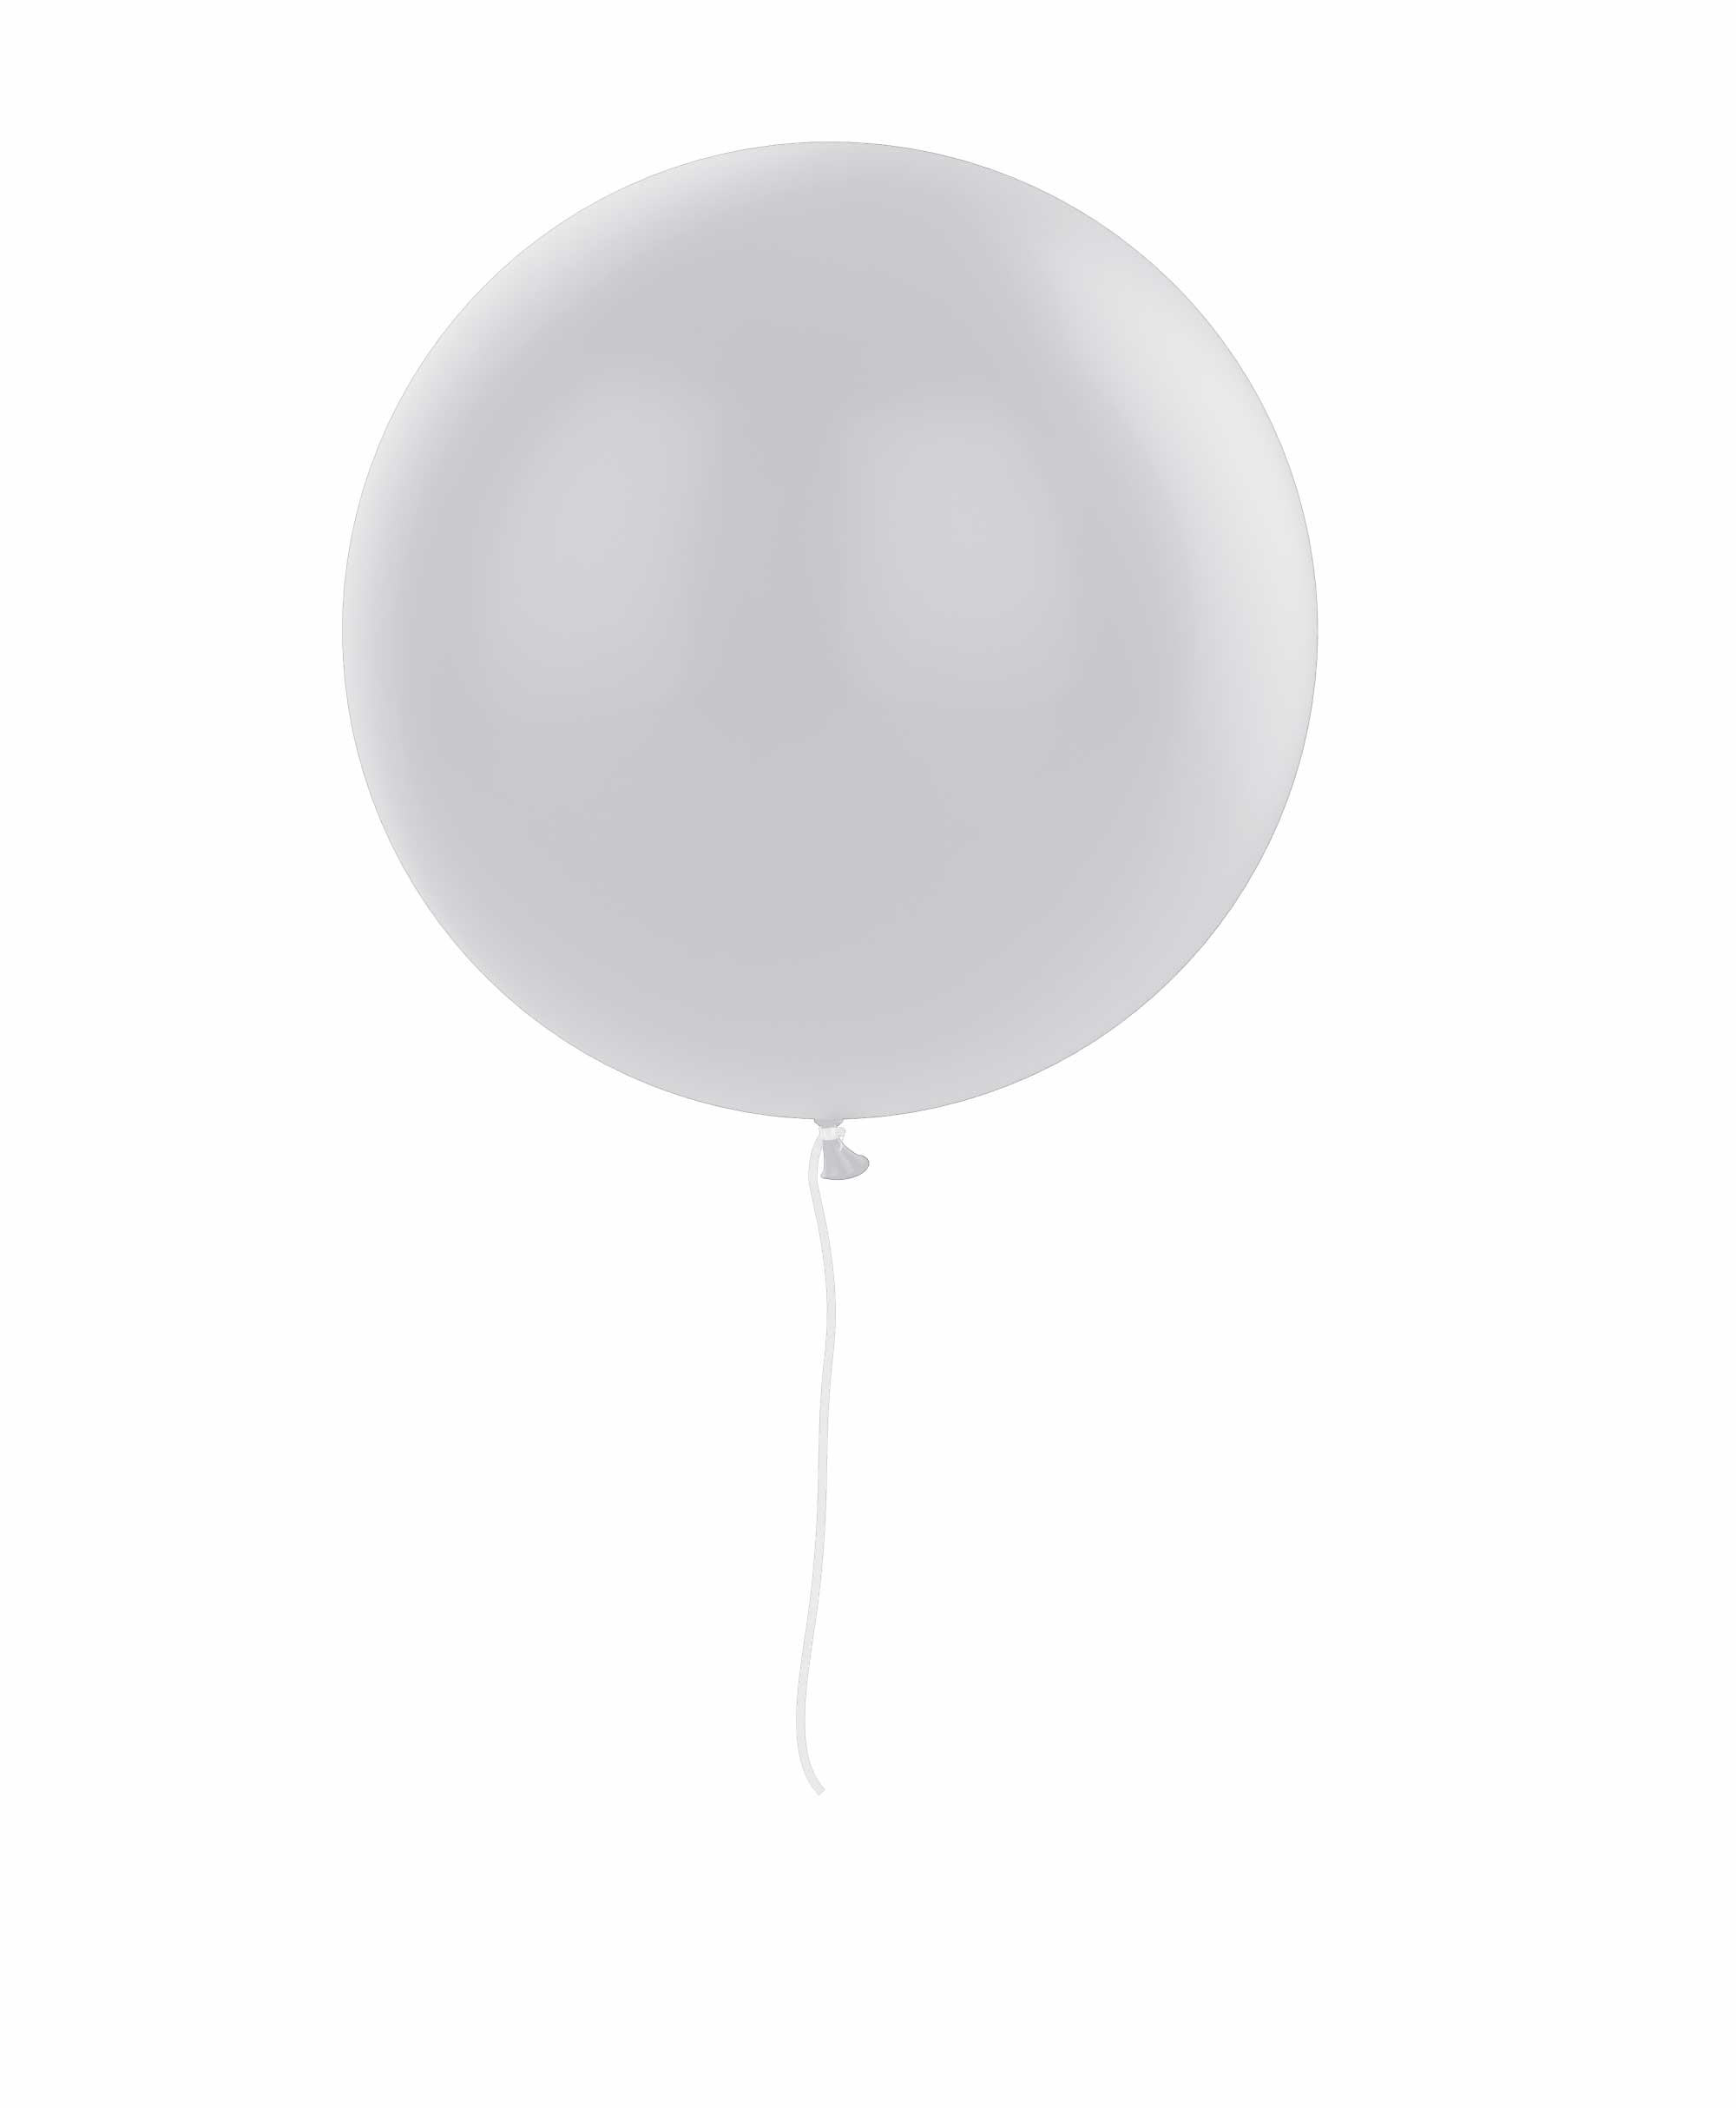 Grey balloon 36" - Sky theme